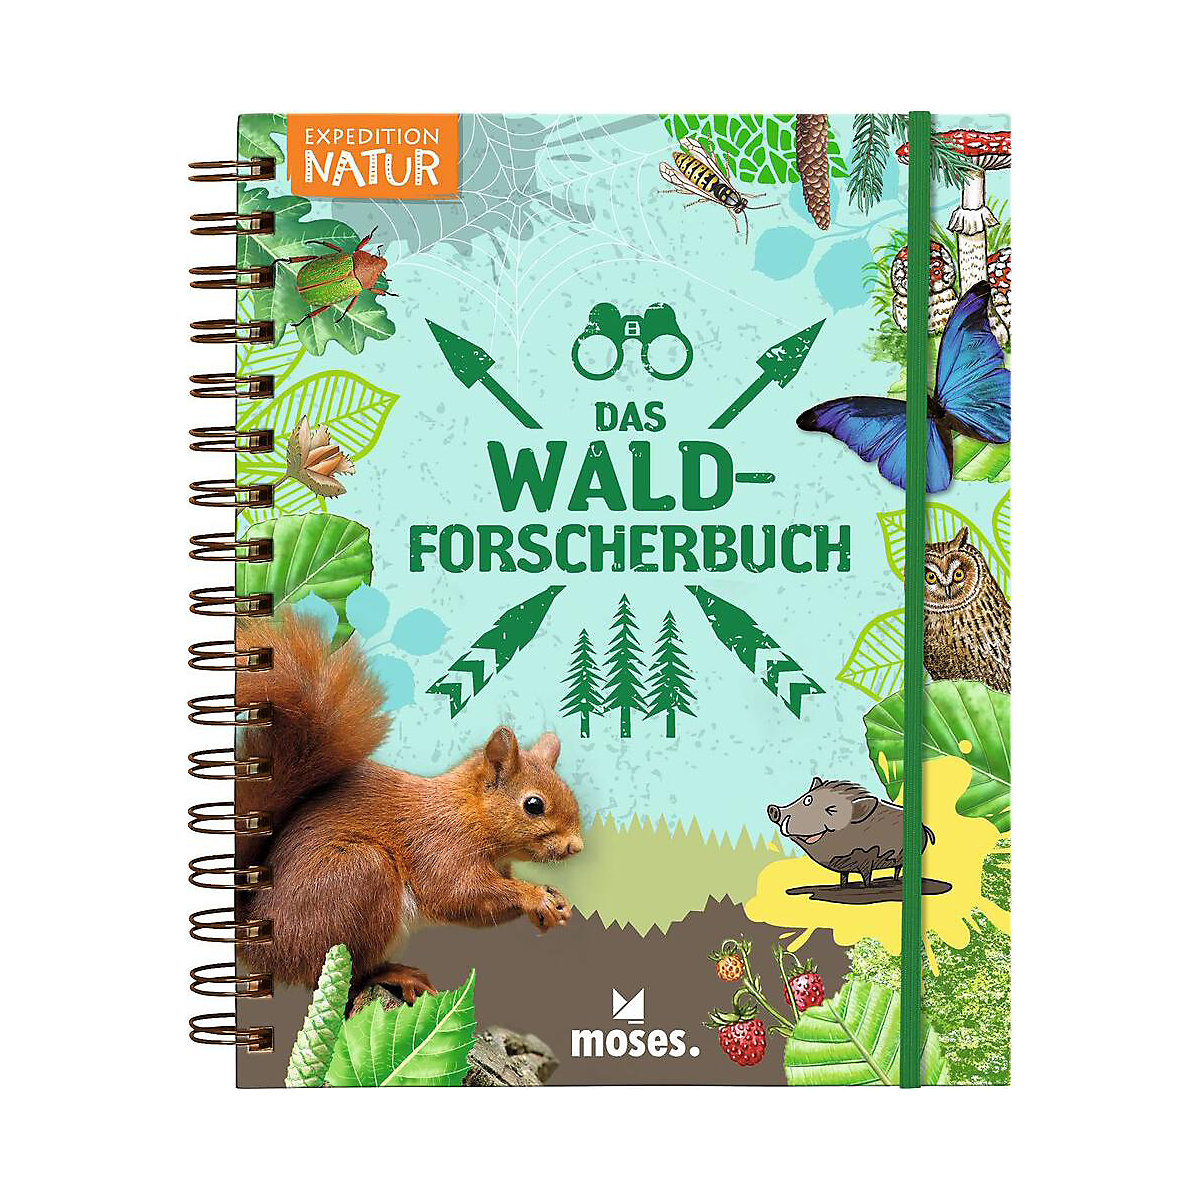 Expedition Natur: Das Wald-Forscherbuch